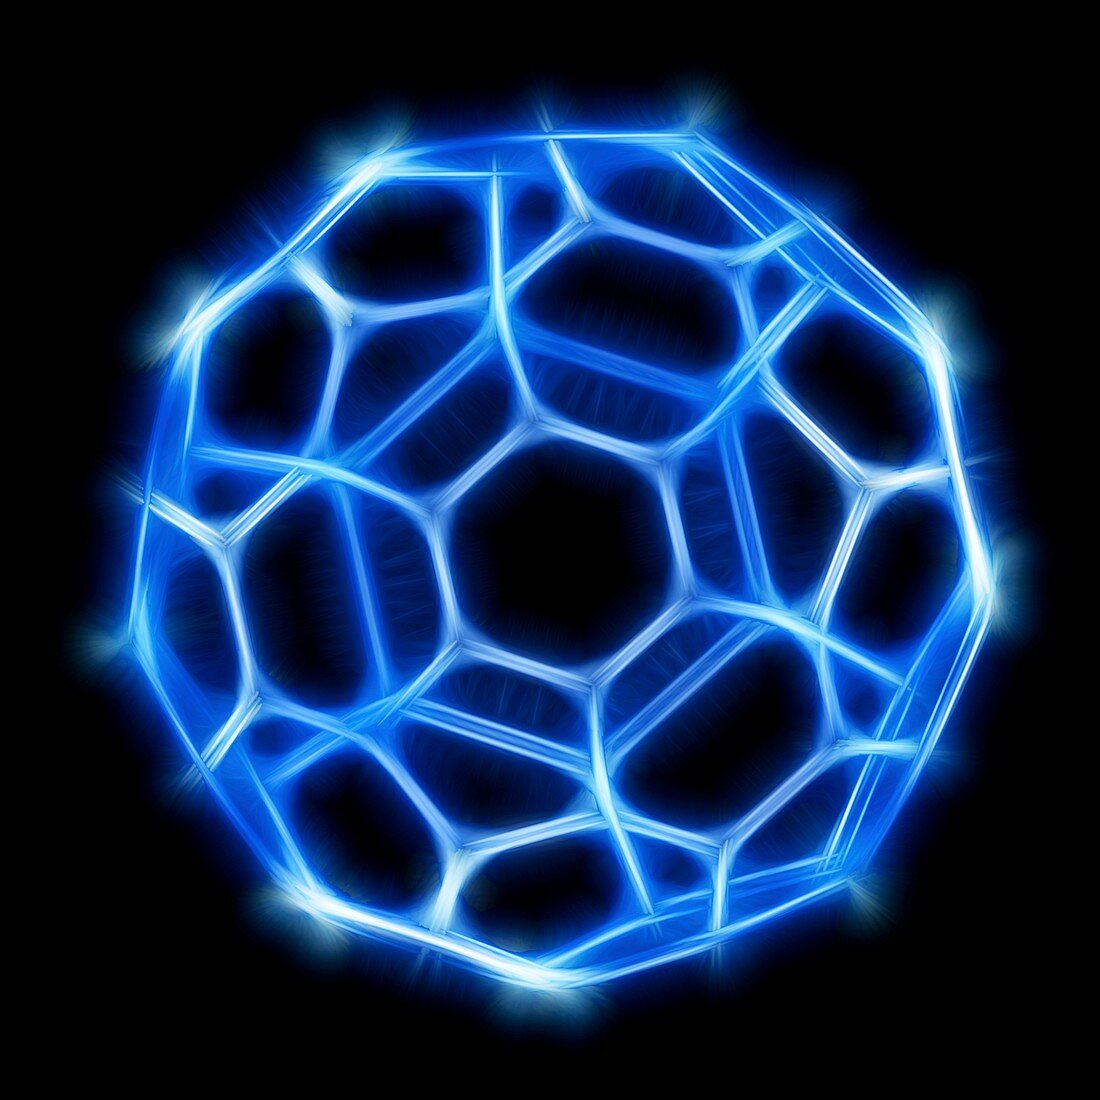 Buckyball,Buckminsterfullerene molecule